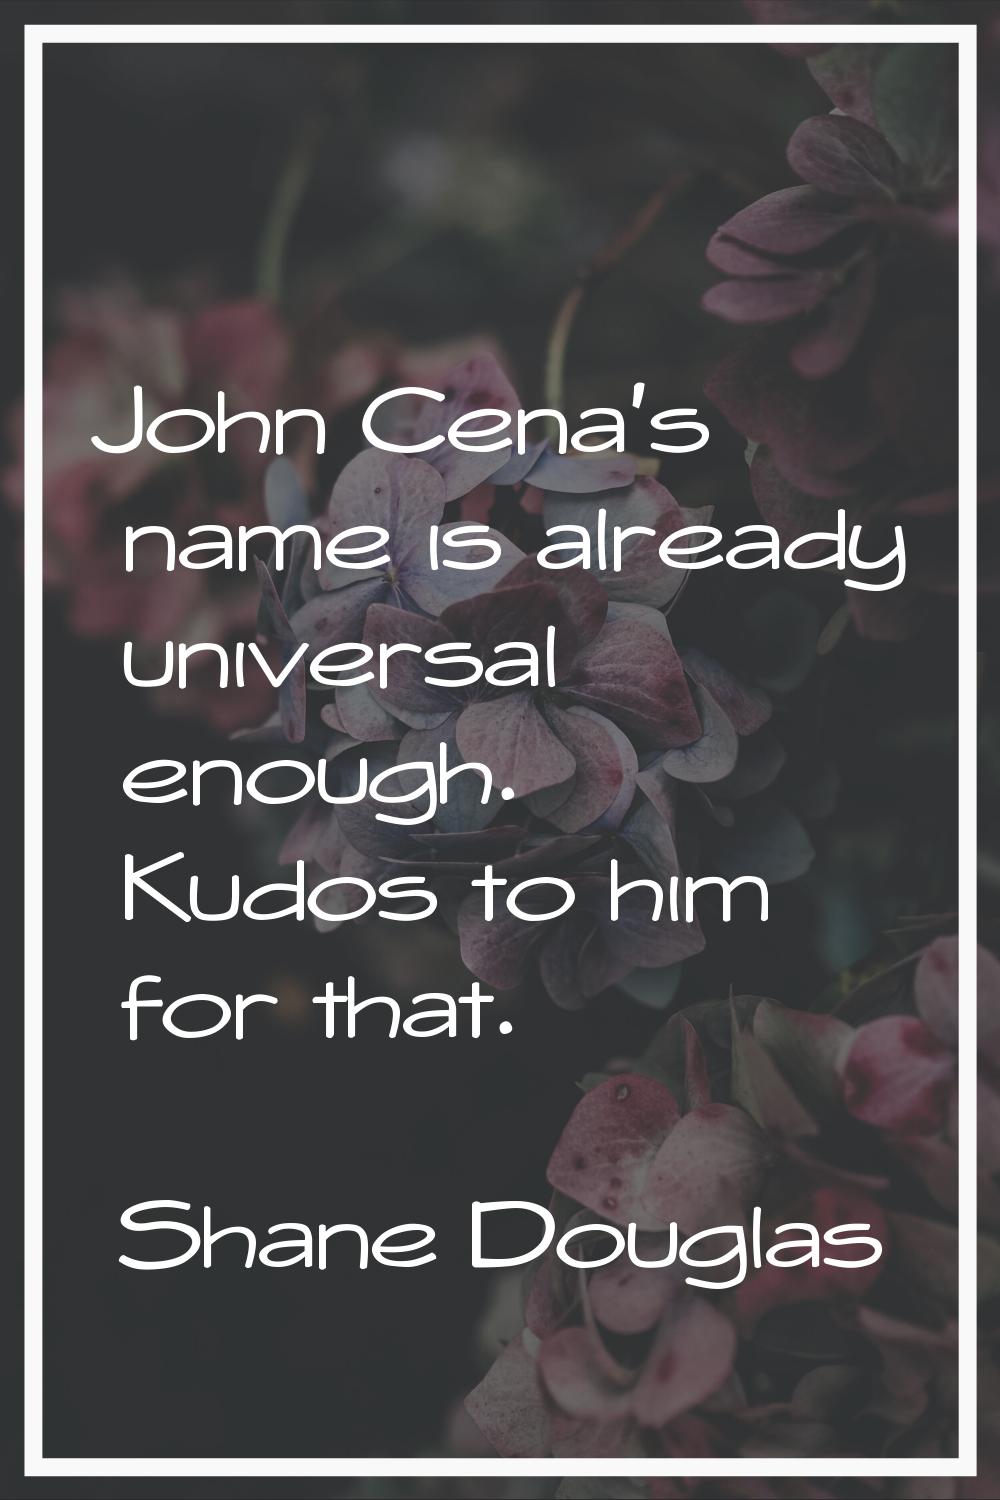 John Cena's name is already universal enough. Kudos to him for that.